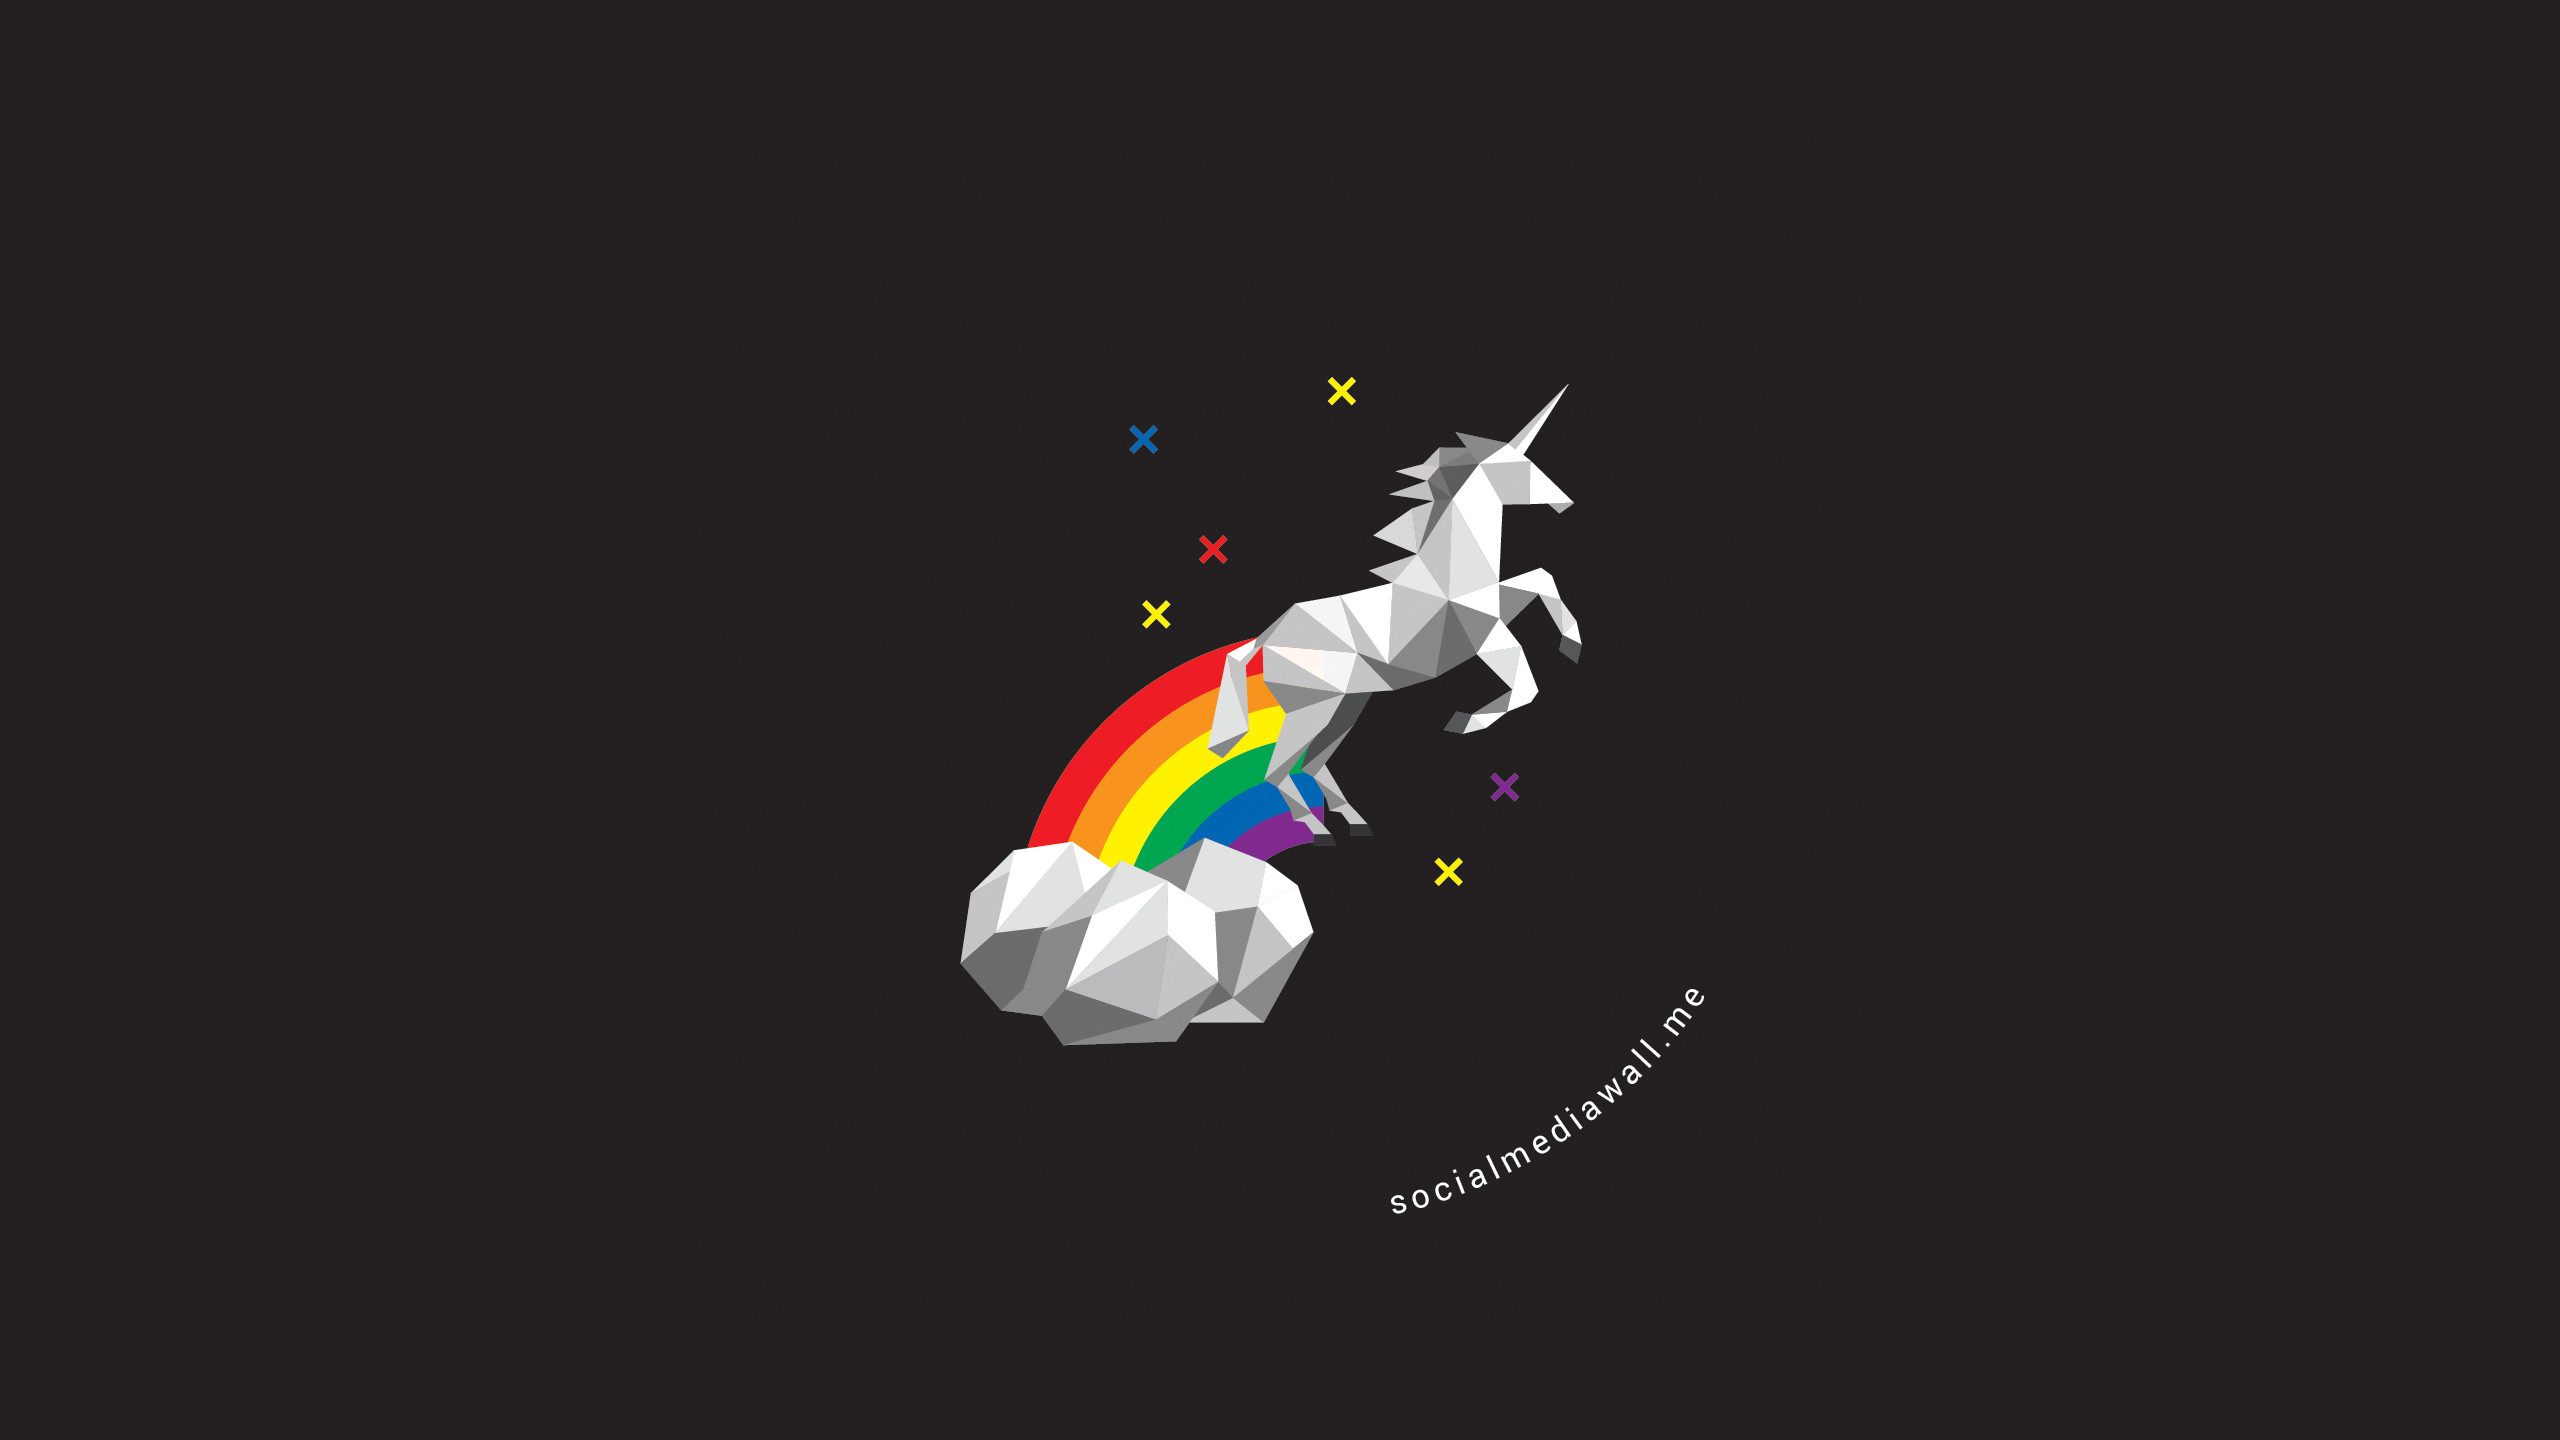 macbook pro desktop wallpaper unicorn